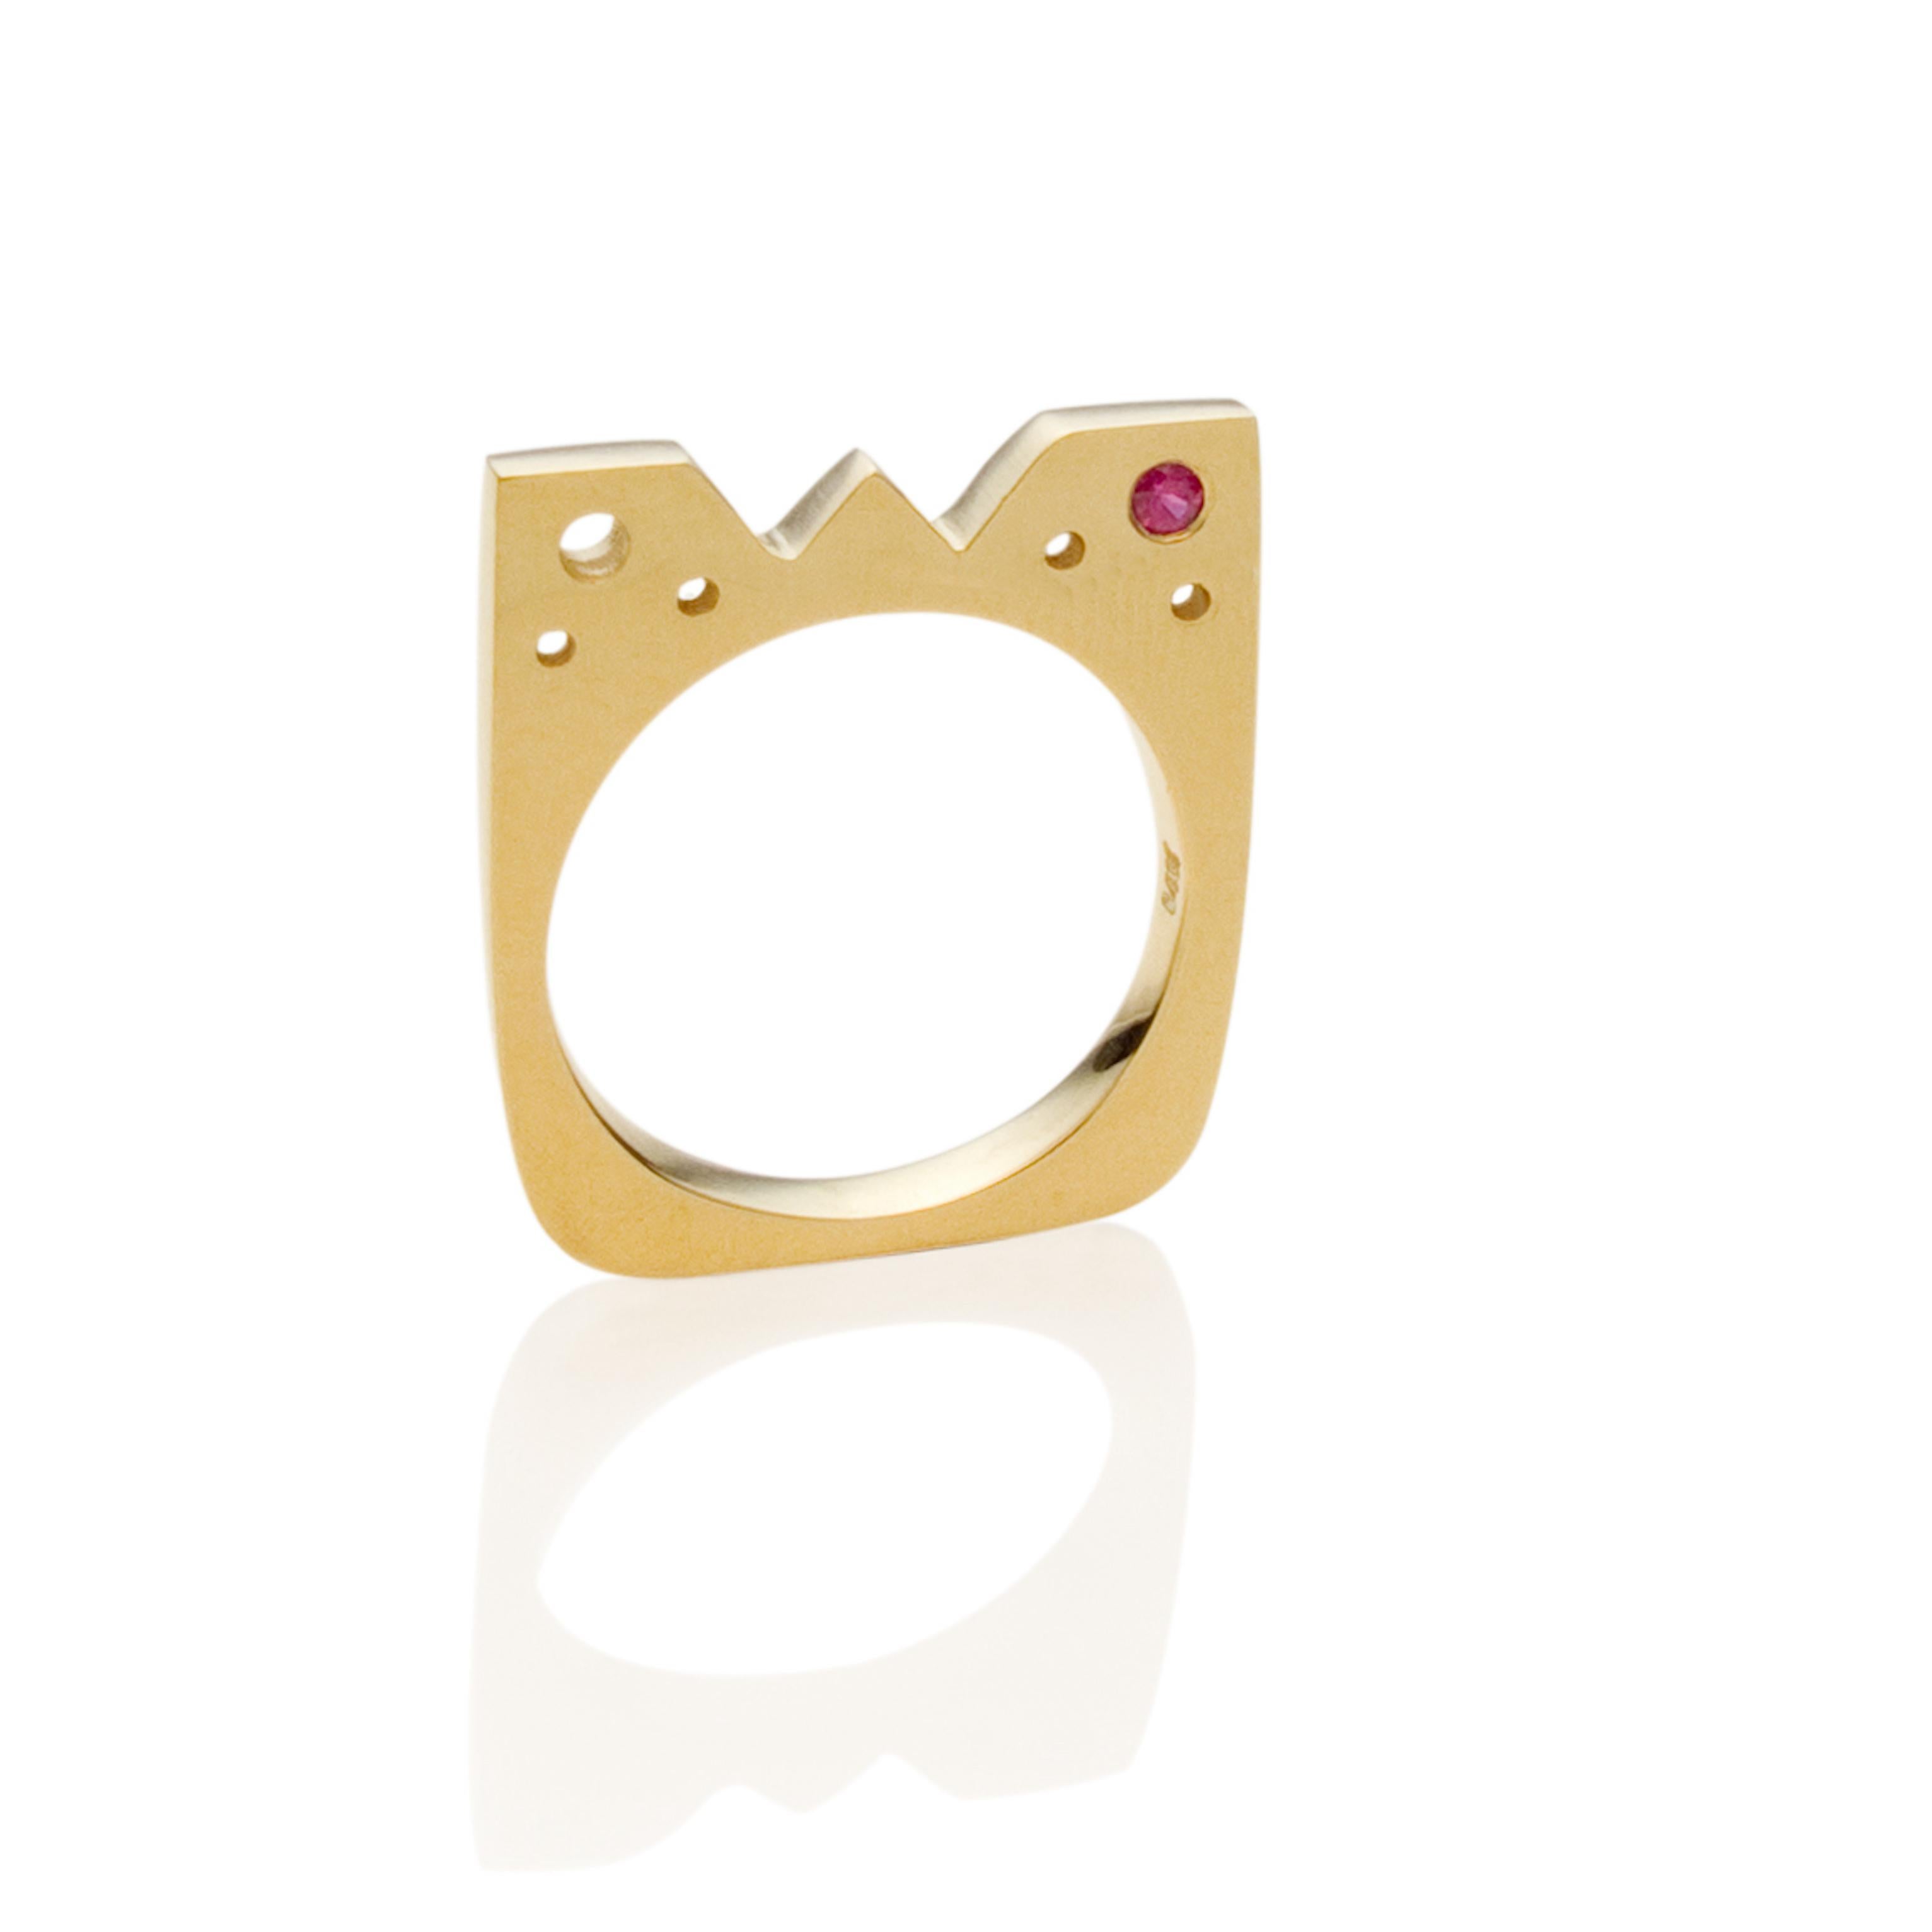 Unser quadratischer, flacher Ring aus Gelbgold mit einem dunkelrosa Saphir ist für Sie - entworfen, um anders zu sein und um Sie täglich daran zu erinnern, dass wir die Eigentümer unseres Lebens und unseres eigenen kleinen Königreichs sind.

Die